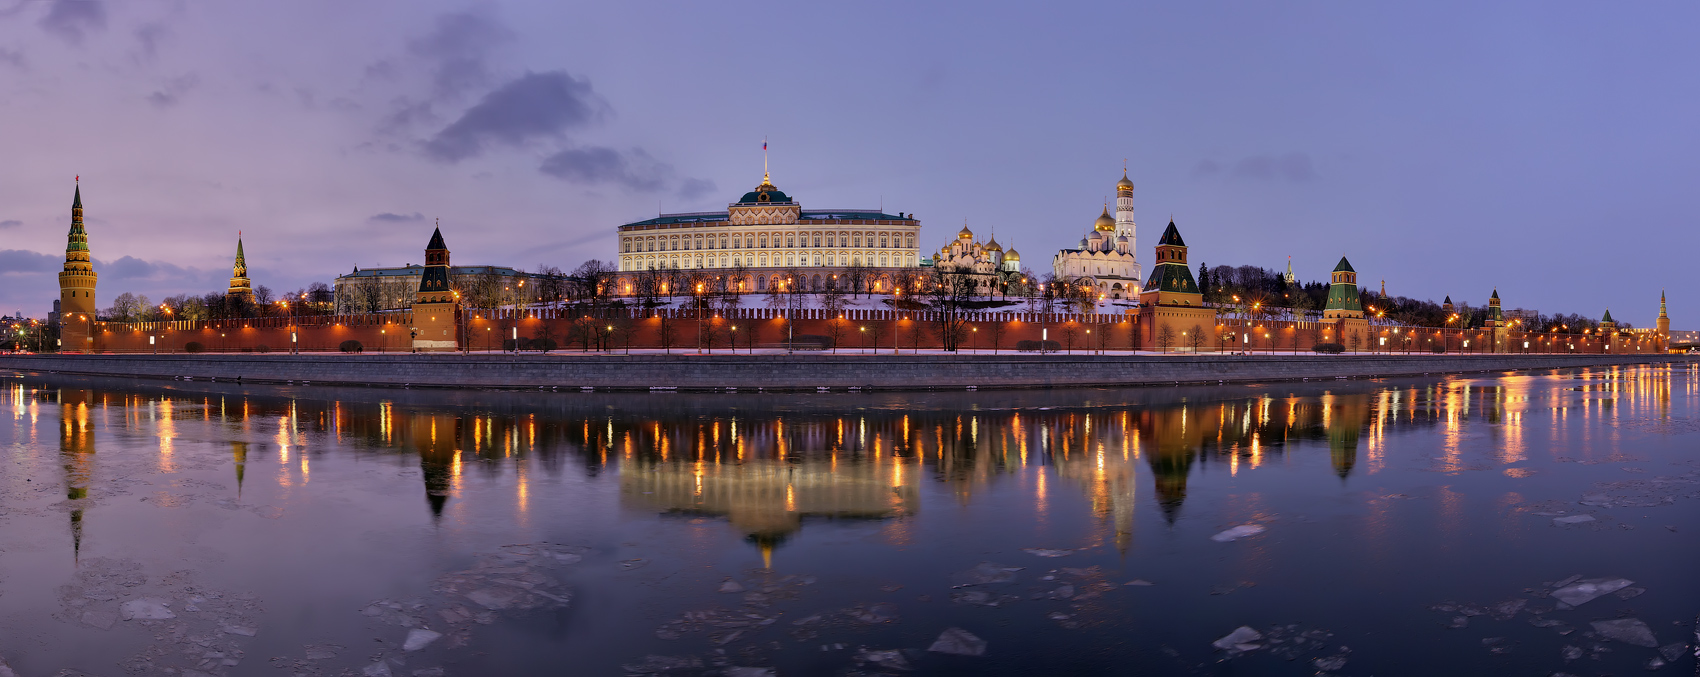 Кремль панорама